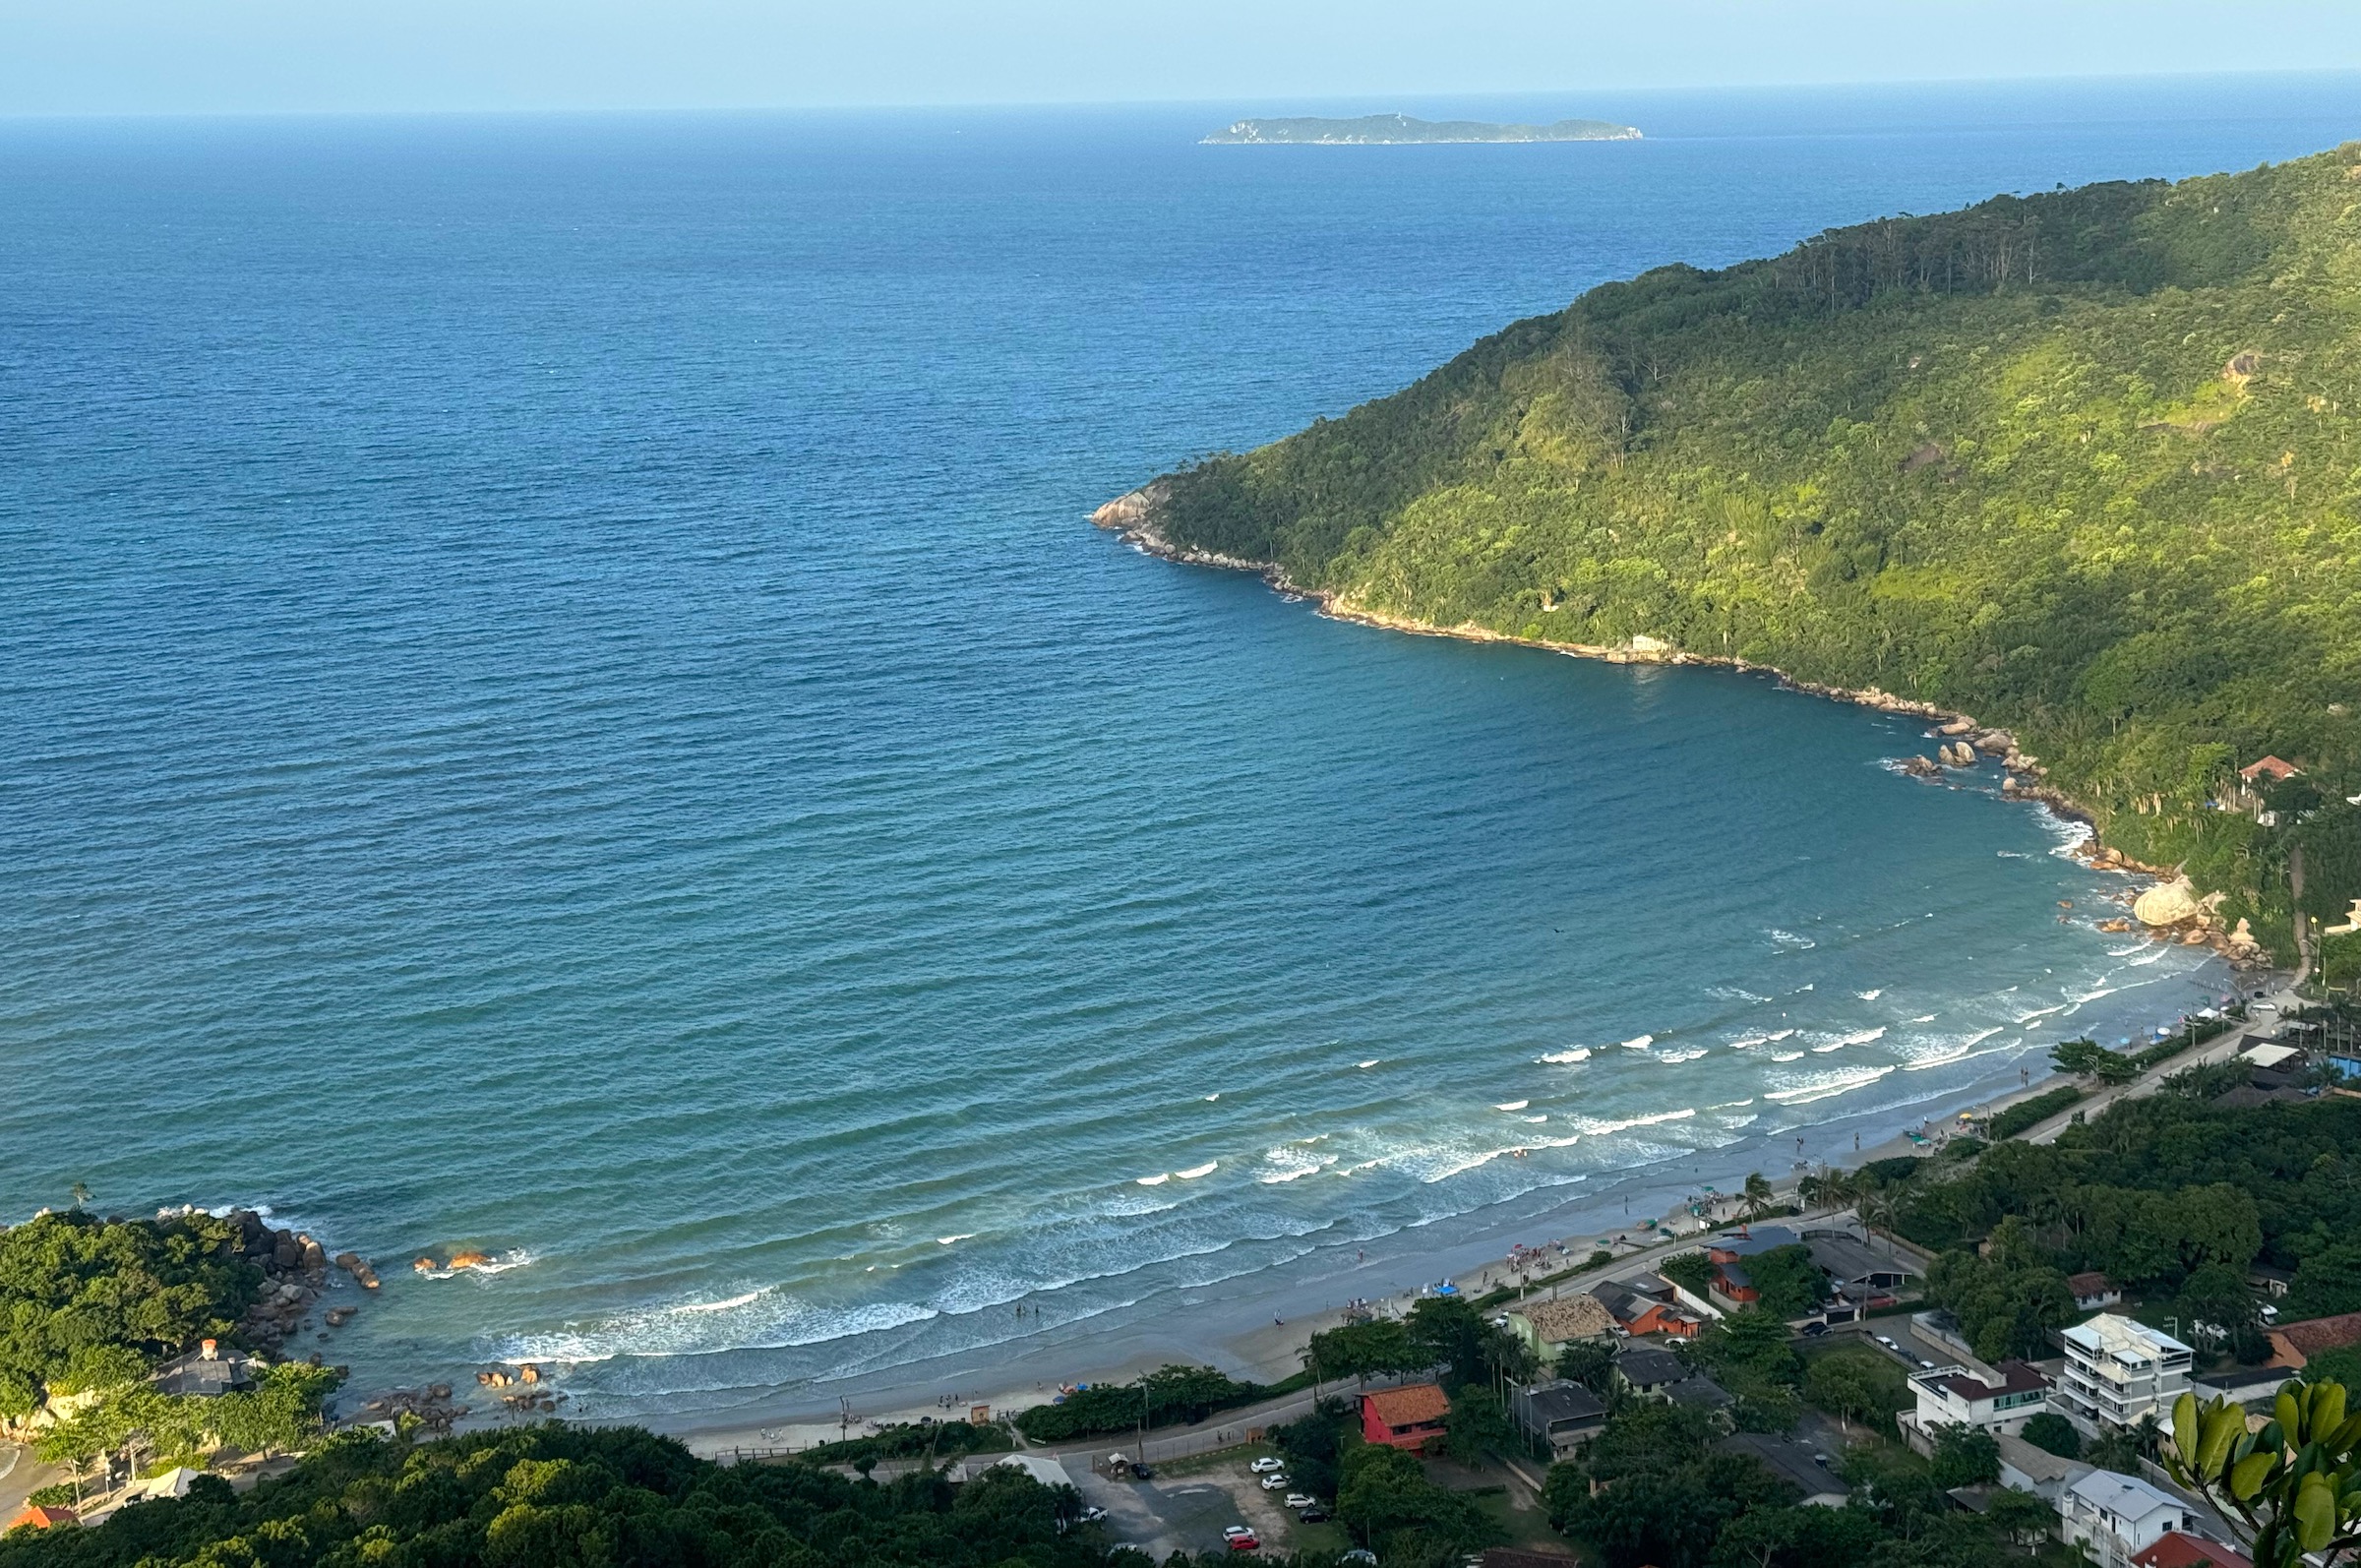 Praia da Conceição